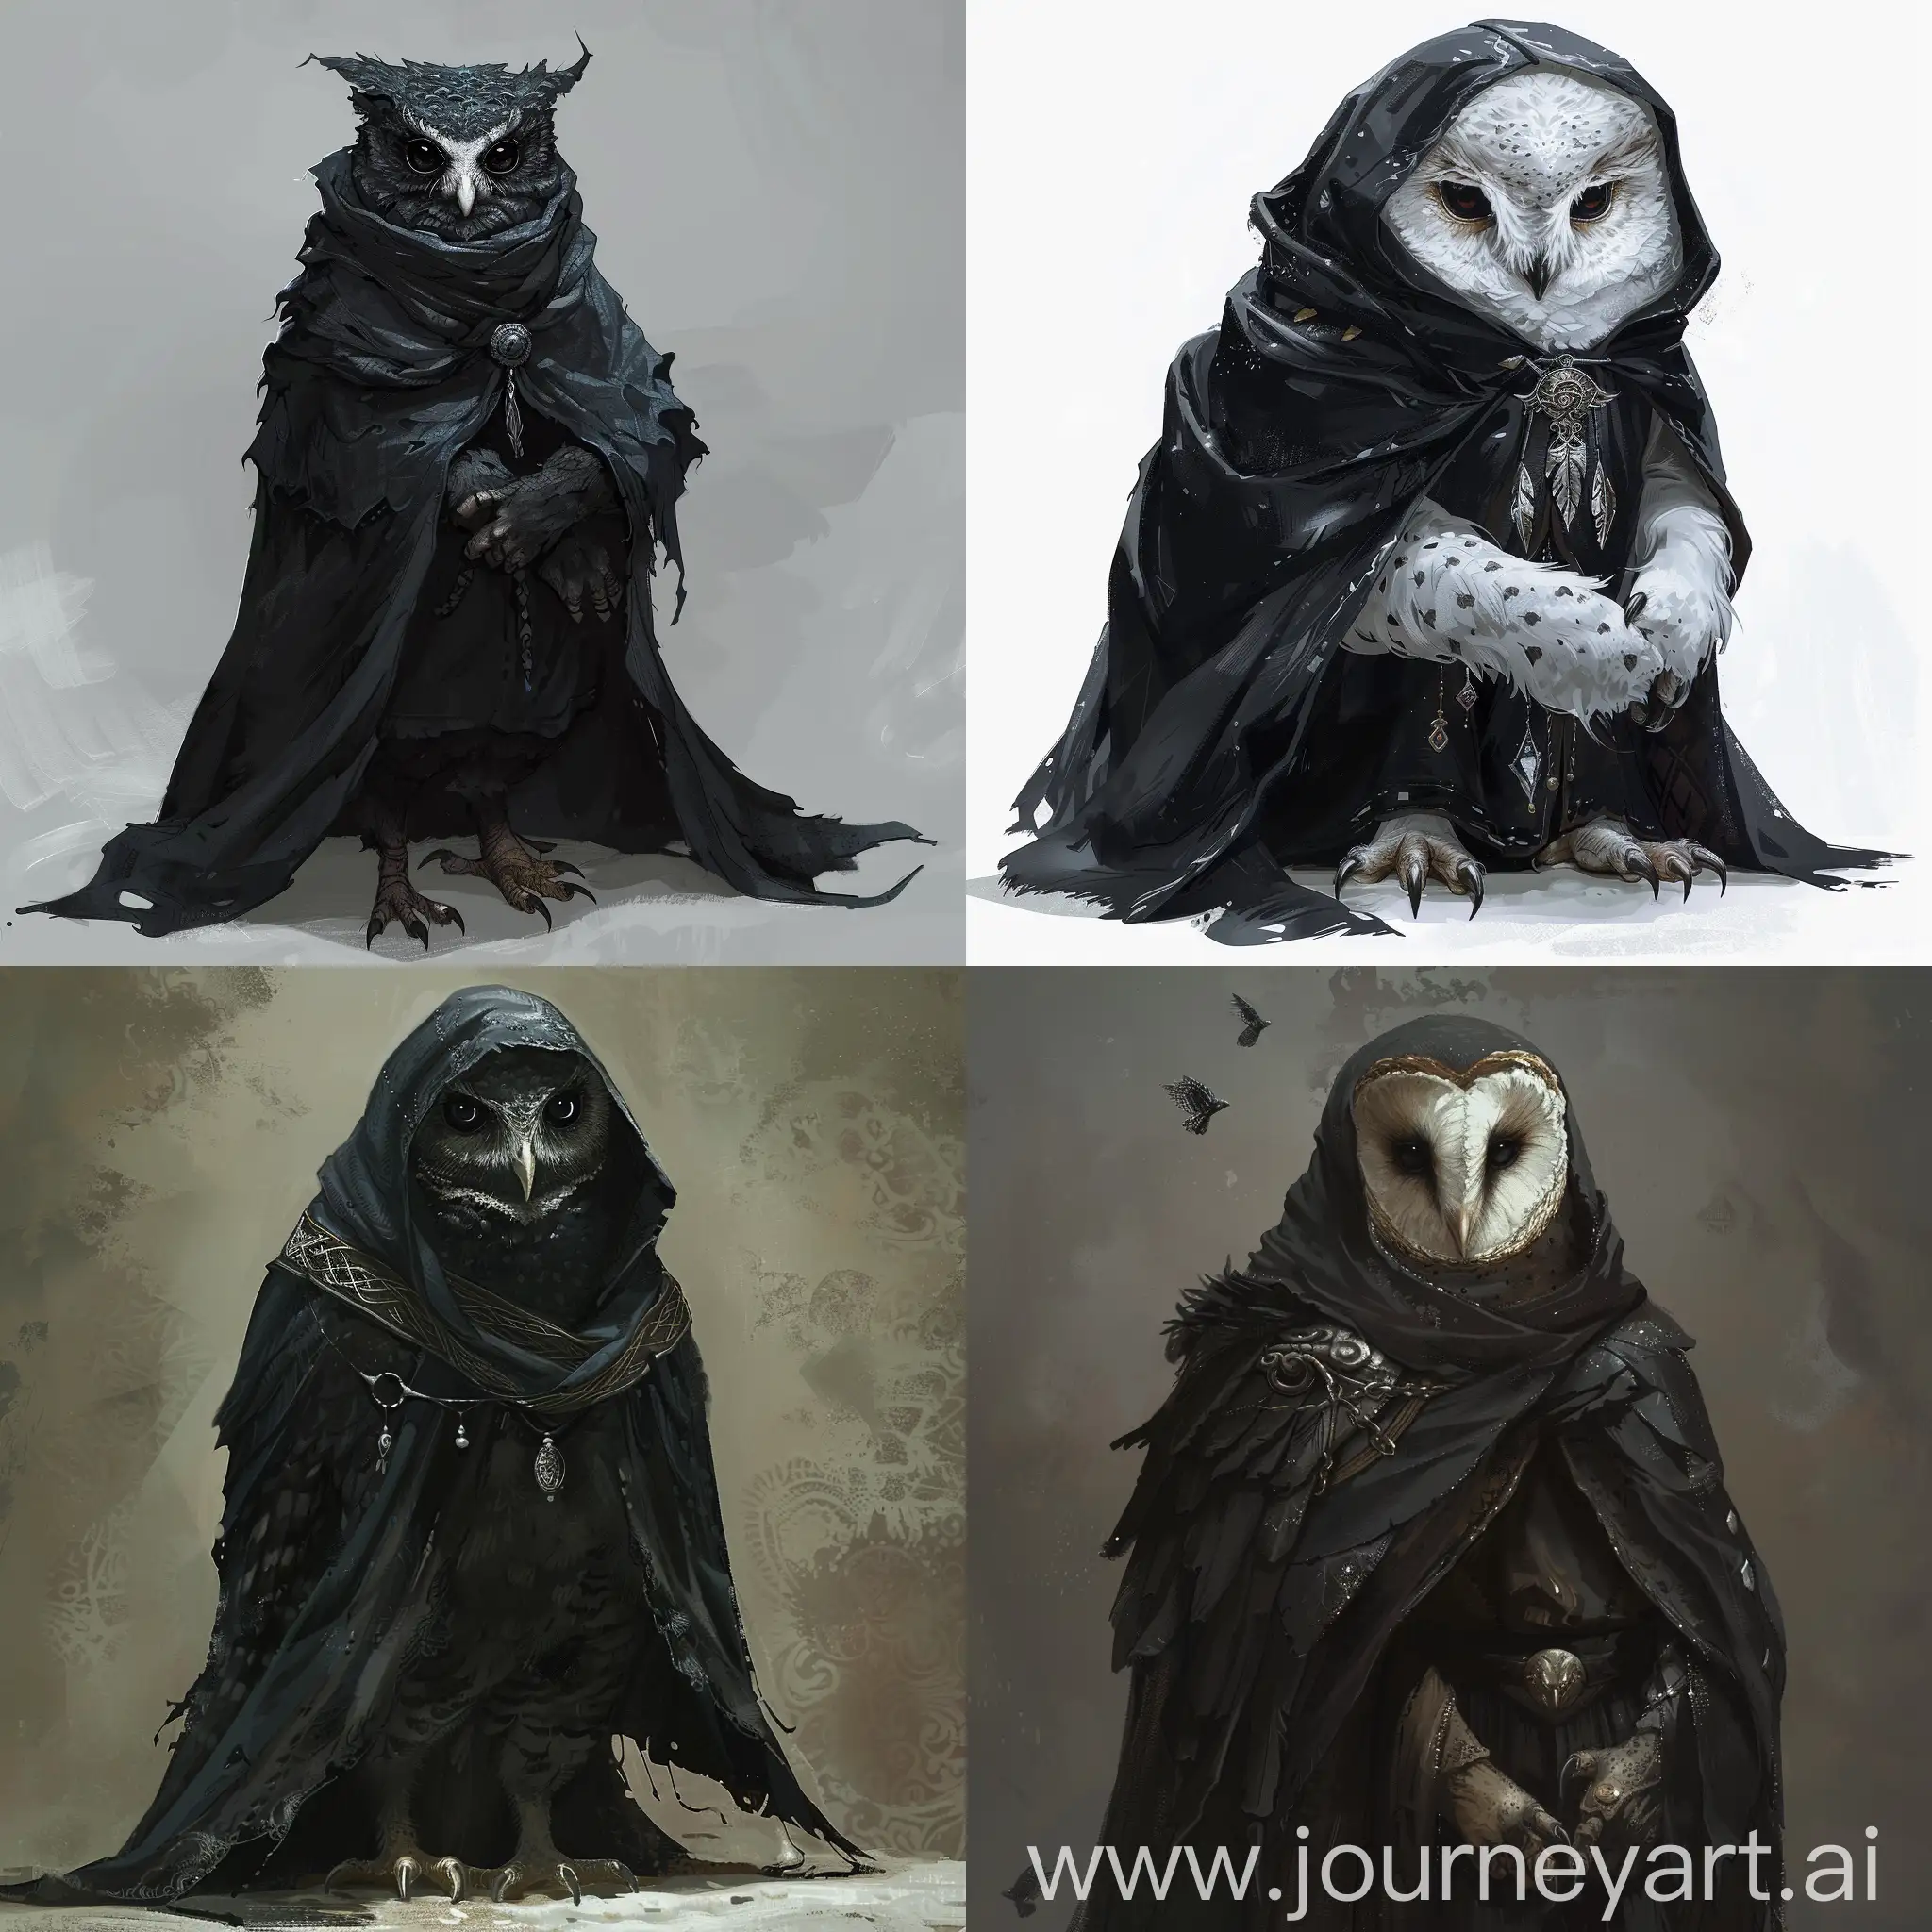 Quero fazer um owlin (DnD, RPG, uma coruja humanoide com braços), mas a minha denominada Gráa é uma coruja urutau, vestindo um manto negro com bordas e detalhes de prata